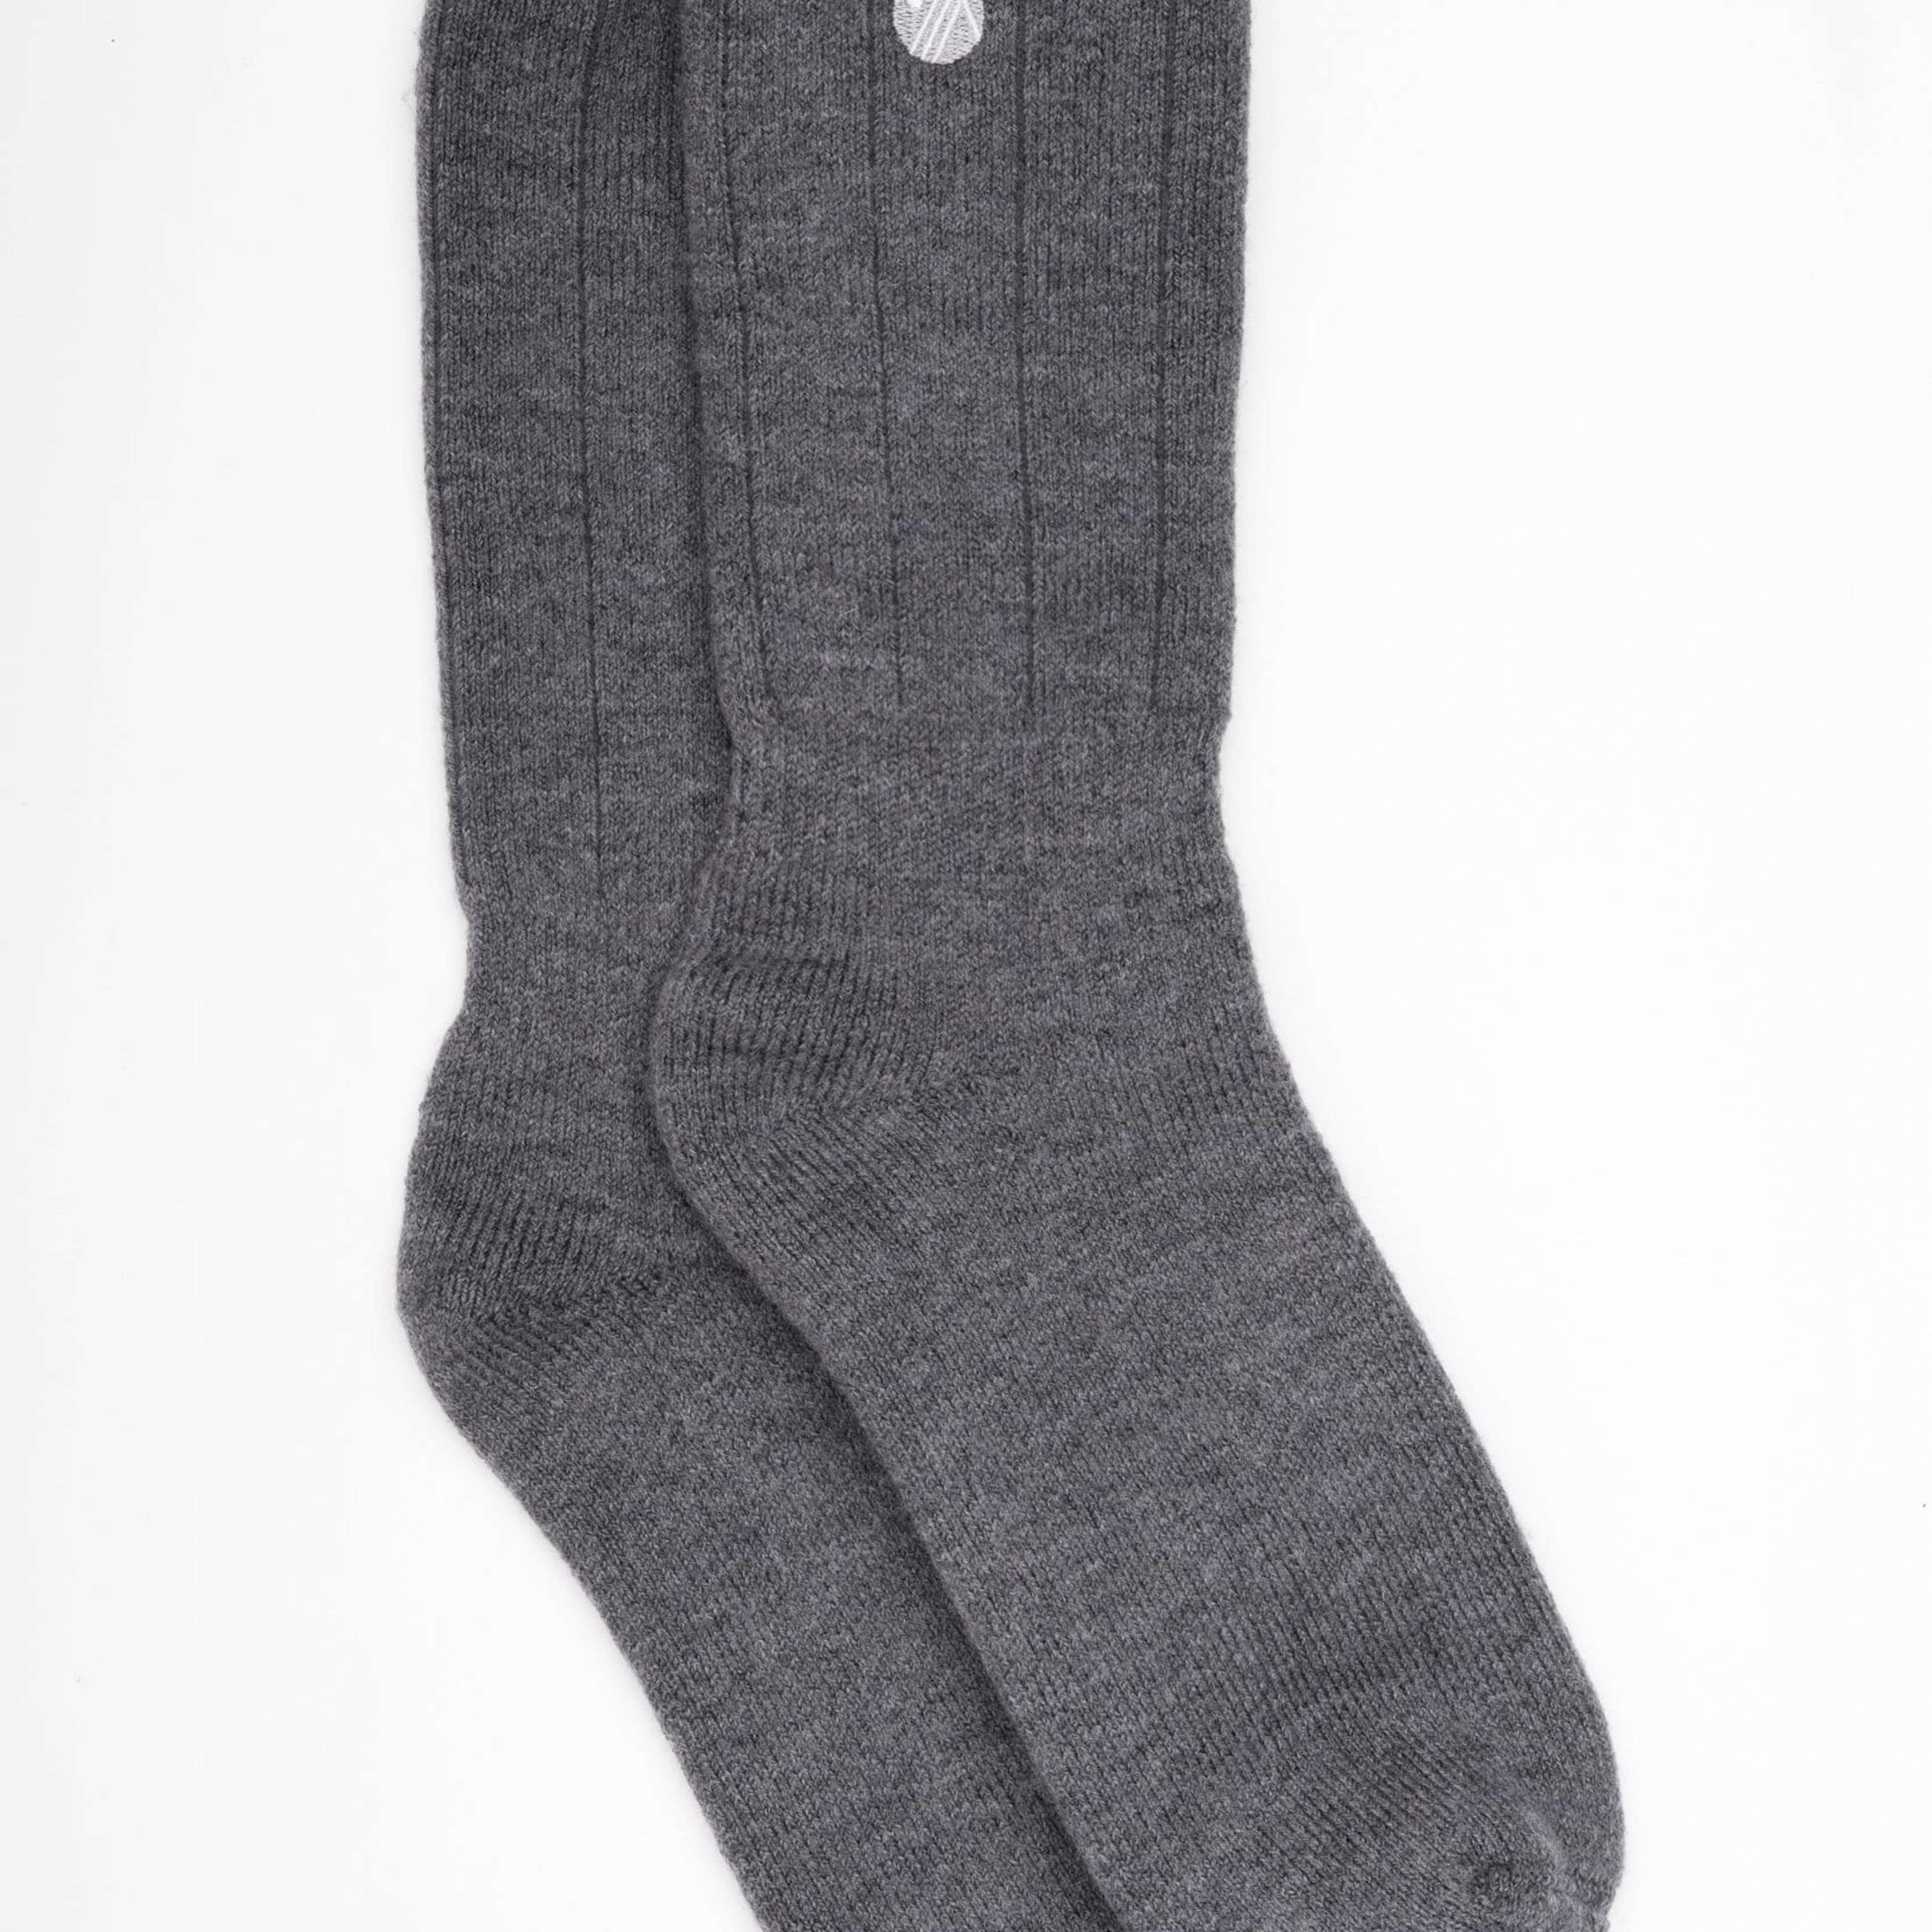 Merino Wool Hiking Socks - Charcoal